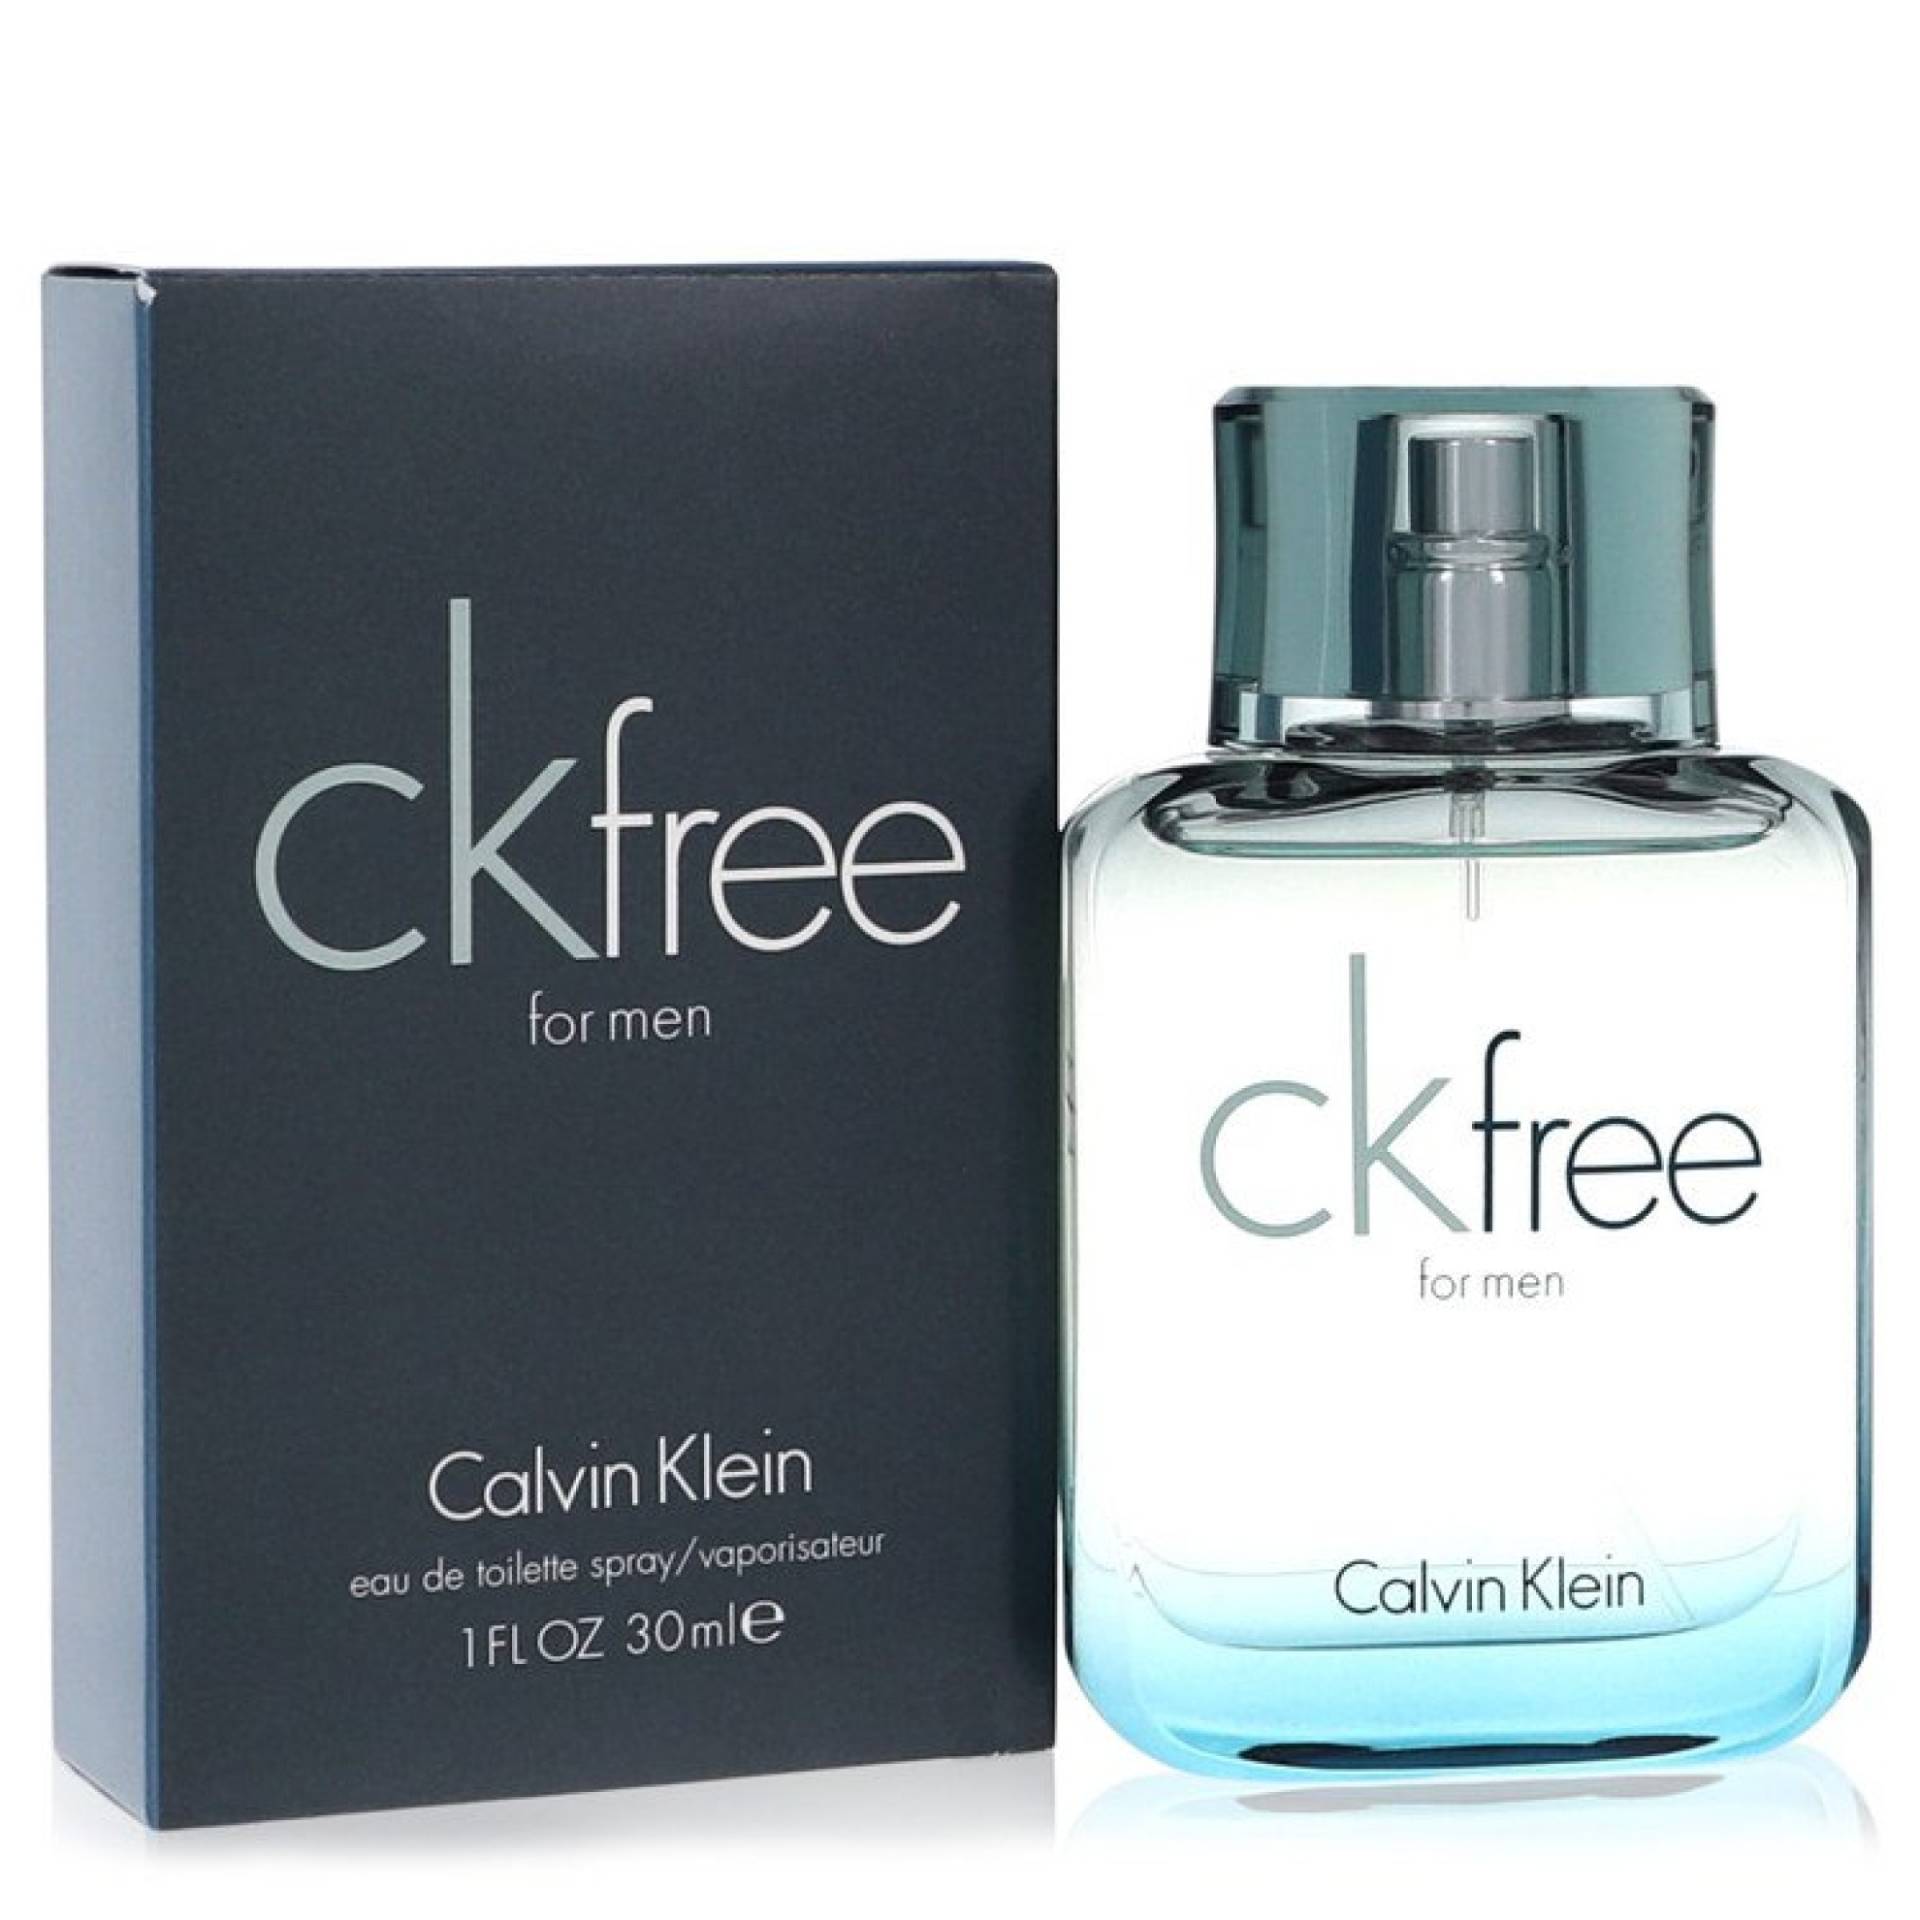 Calvin Klein CK Free Eau De Toilette Spray 29 ml von Calvin Klein